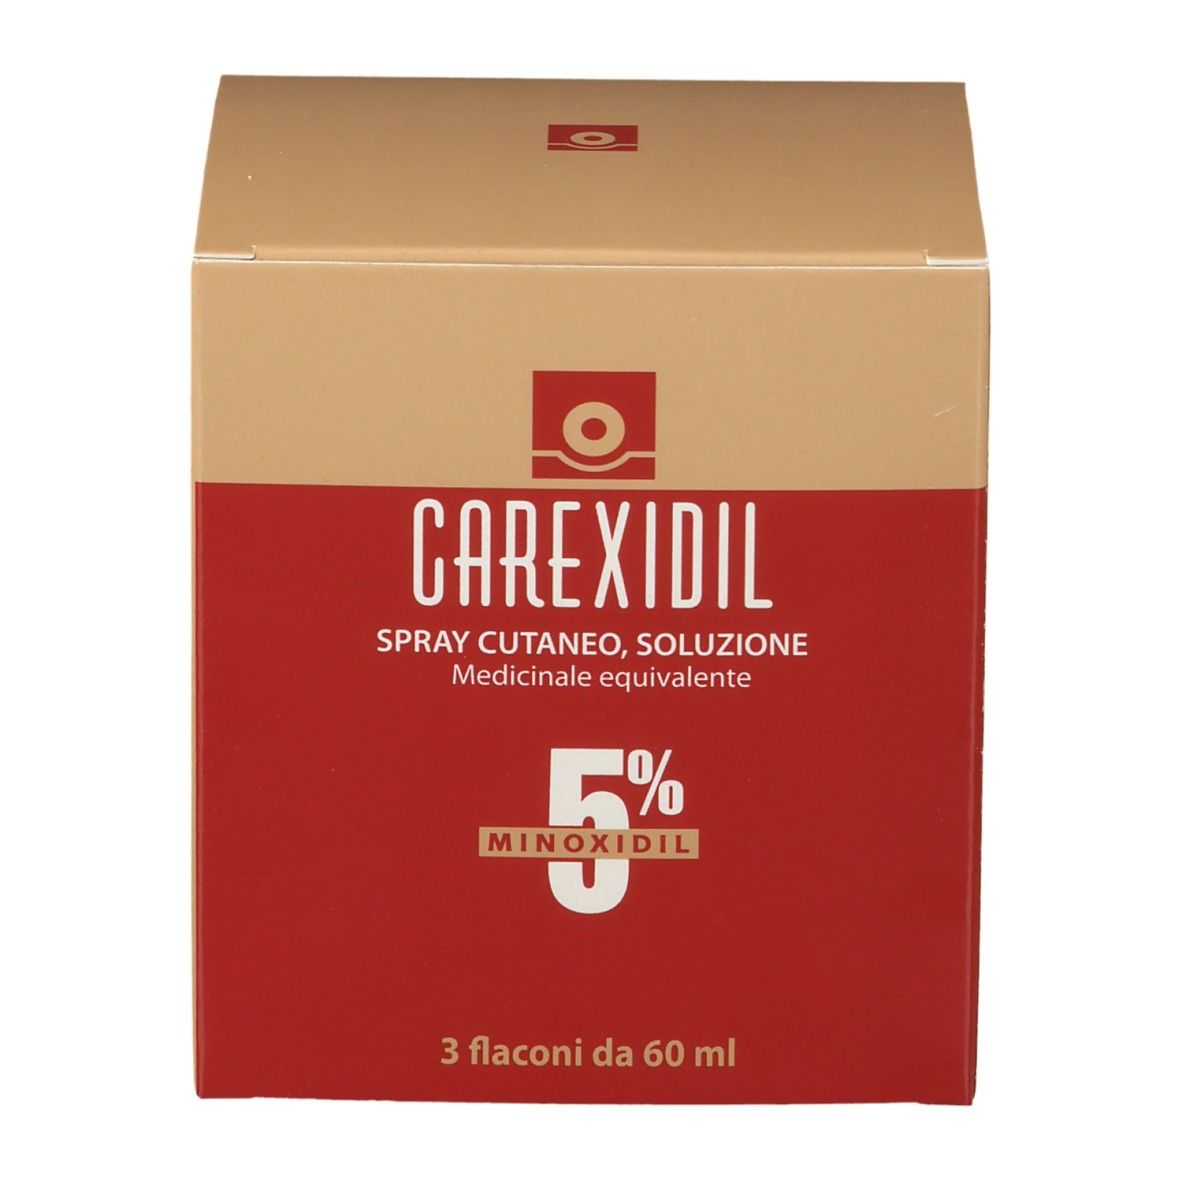 CAREXIDIL 5% Spray Cutaneo, Soluzione